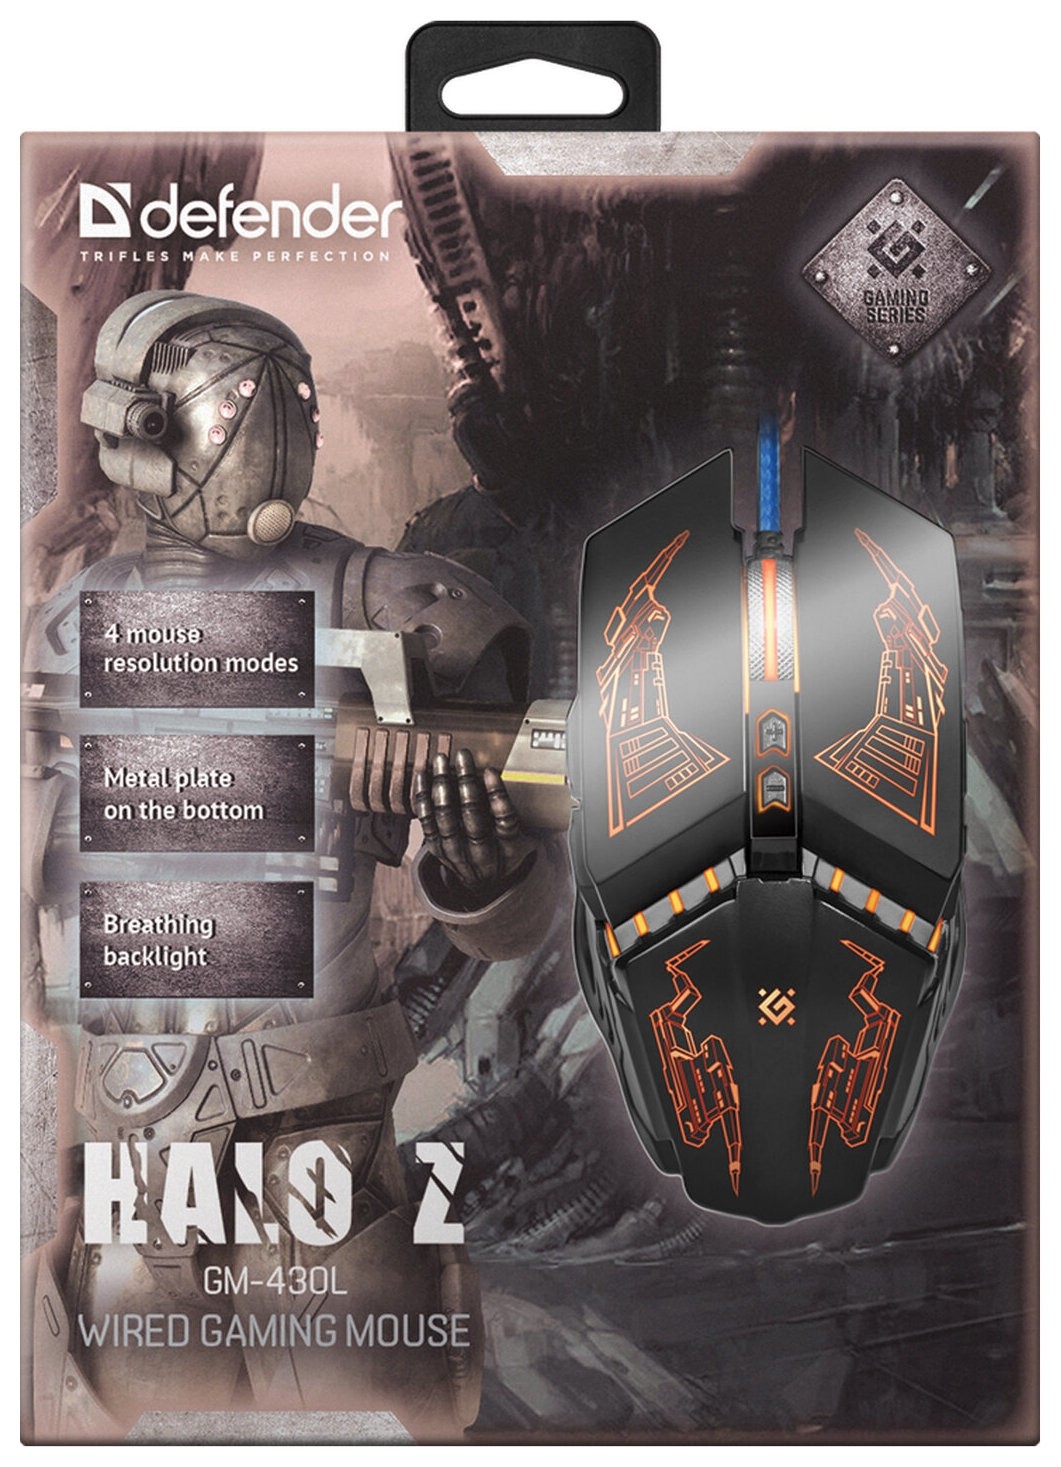 Мышь проводная игровая Defender Halo Z Gm-430l, Usb, 6 кнопок+1 колесо-кнопка, оптическая, черная, 52430